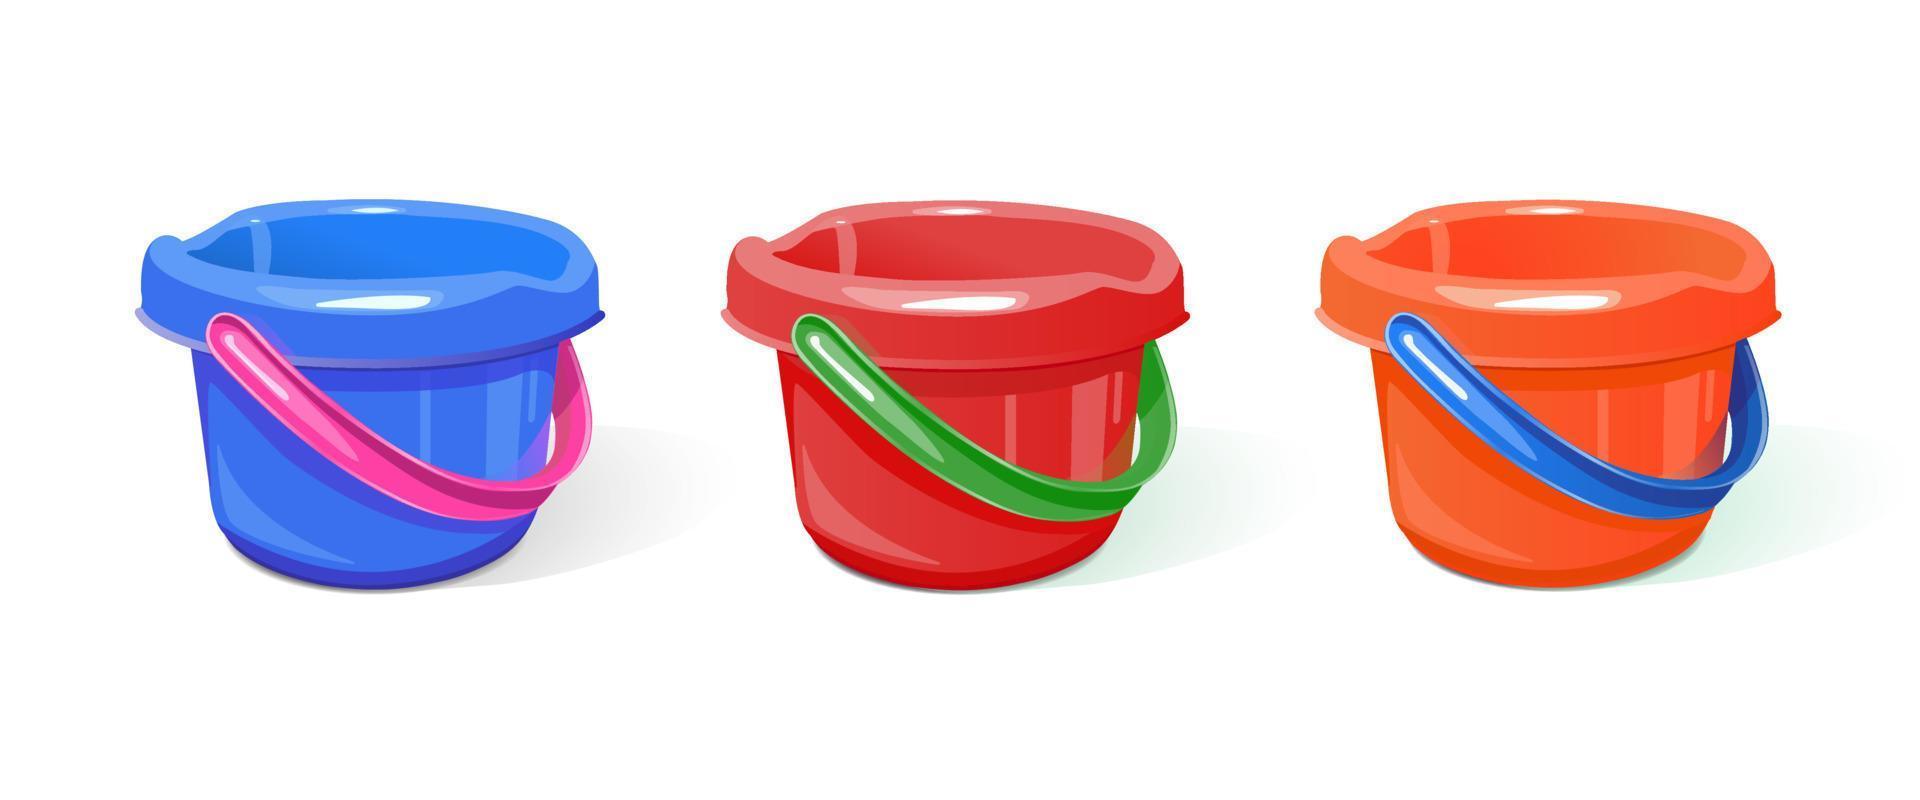 set plastic emmers van verschillende kleuren voor huishoudelijk werk, voor kinderspellen in de zandbak. een realistisch beeld. geïsoleerd op een witte achtergrond. vector illustratie